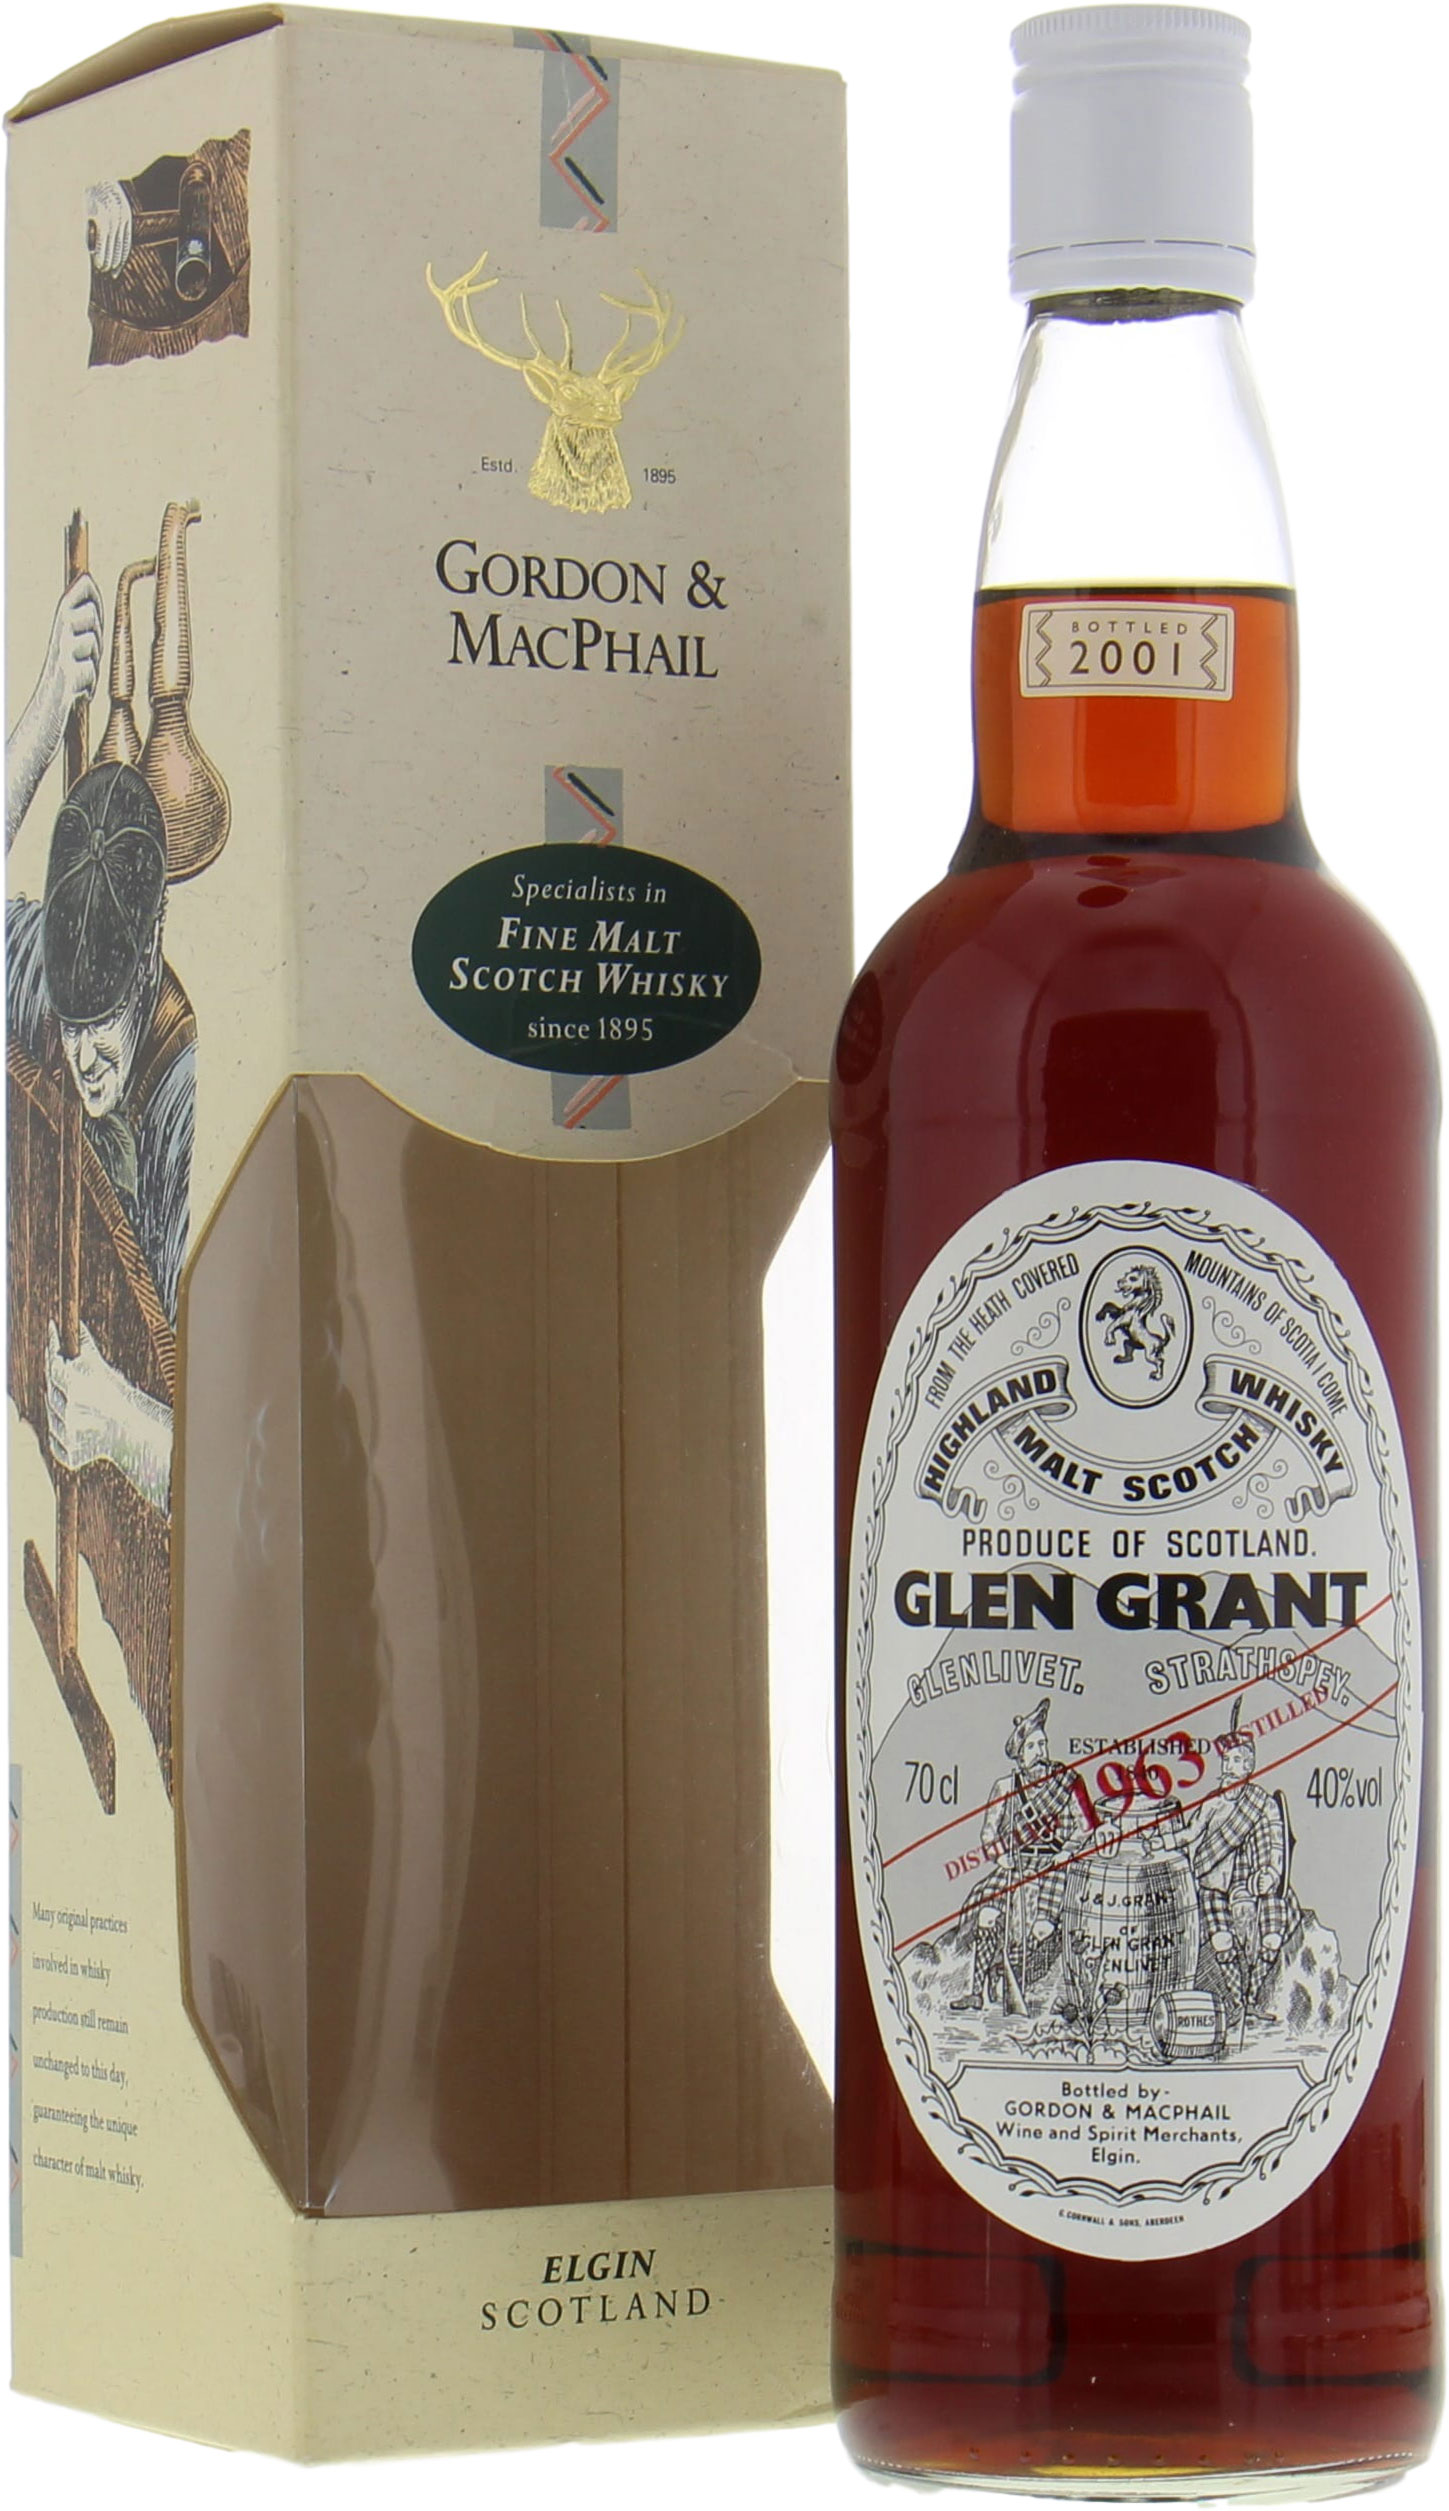 Glen Grant - 1963 Gordon & MacPhail Licensed Bottling 40% 1963 In Original Container